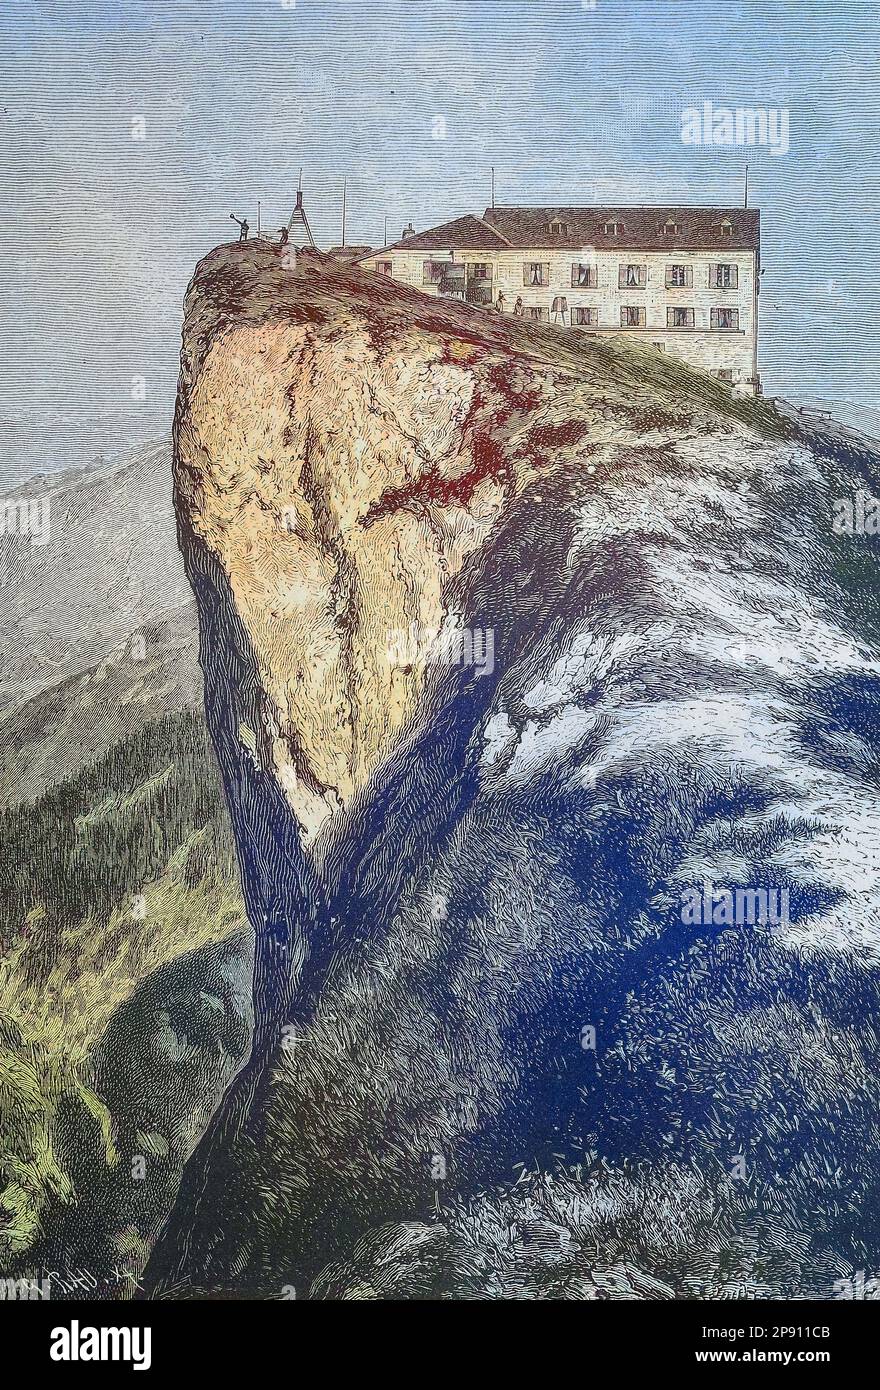 Das Hotel am Schafberg, einem Berg im österreichischen Bundesland Salisburgo. Er liegt im Salzkammergut-Gebirge der Nördlichen Kalkalpen, Historisch, digital restaurierte Reproduktion von einer Vorlage aus dem 19. Jahrhundert Foto Stock